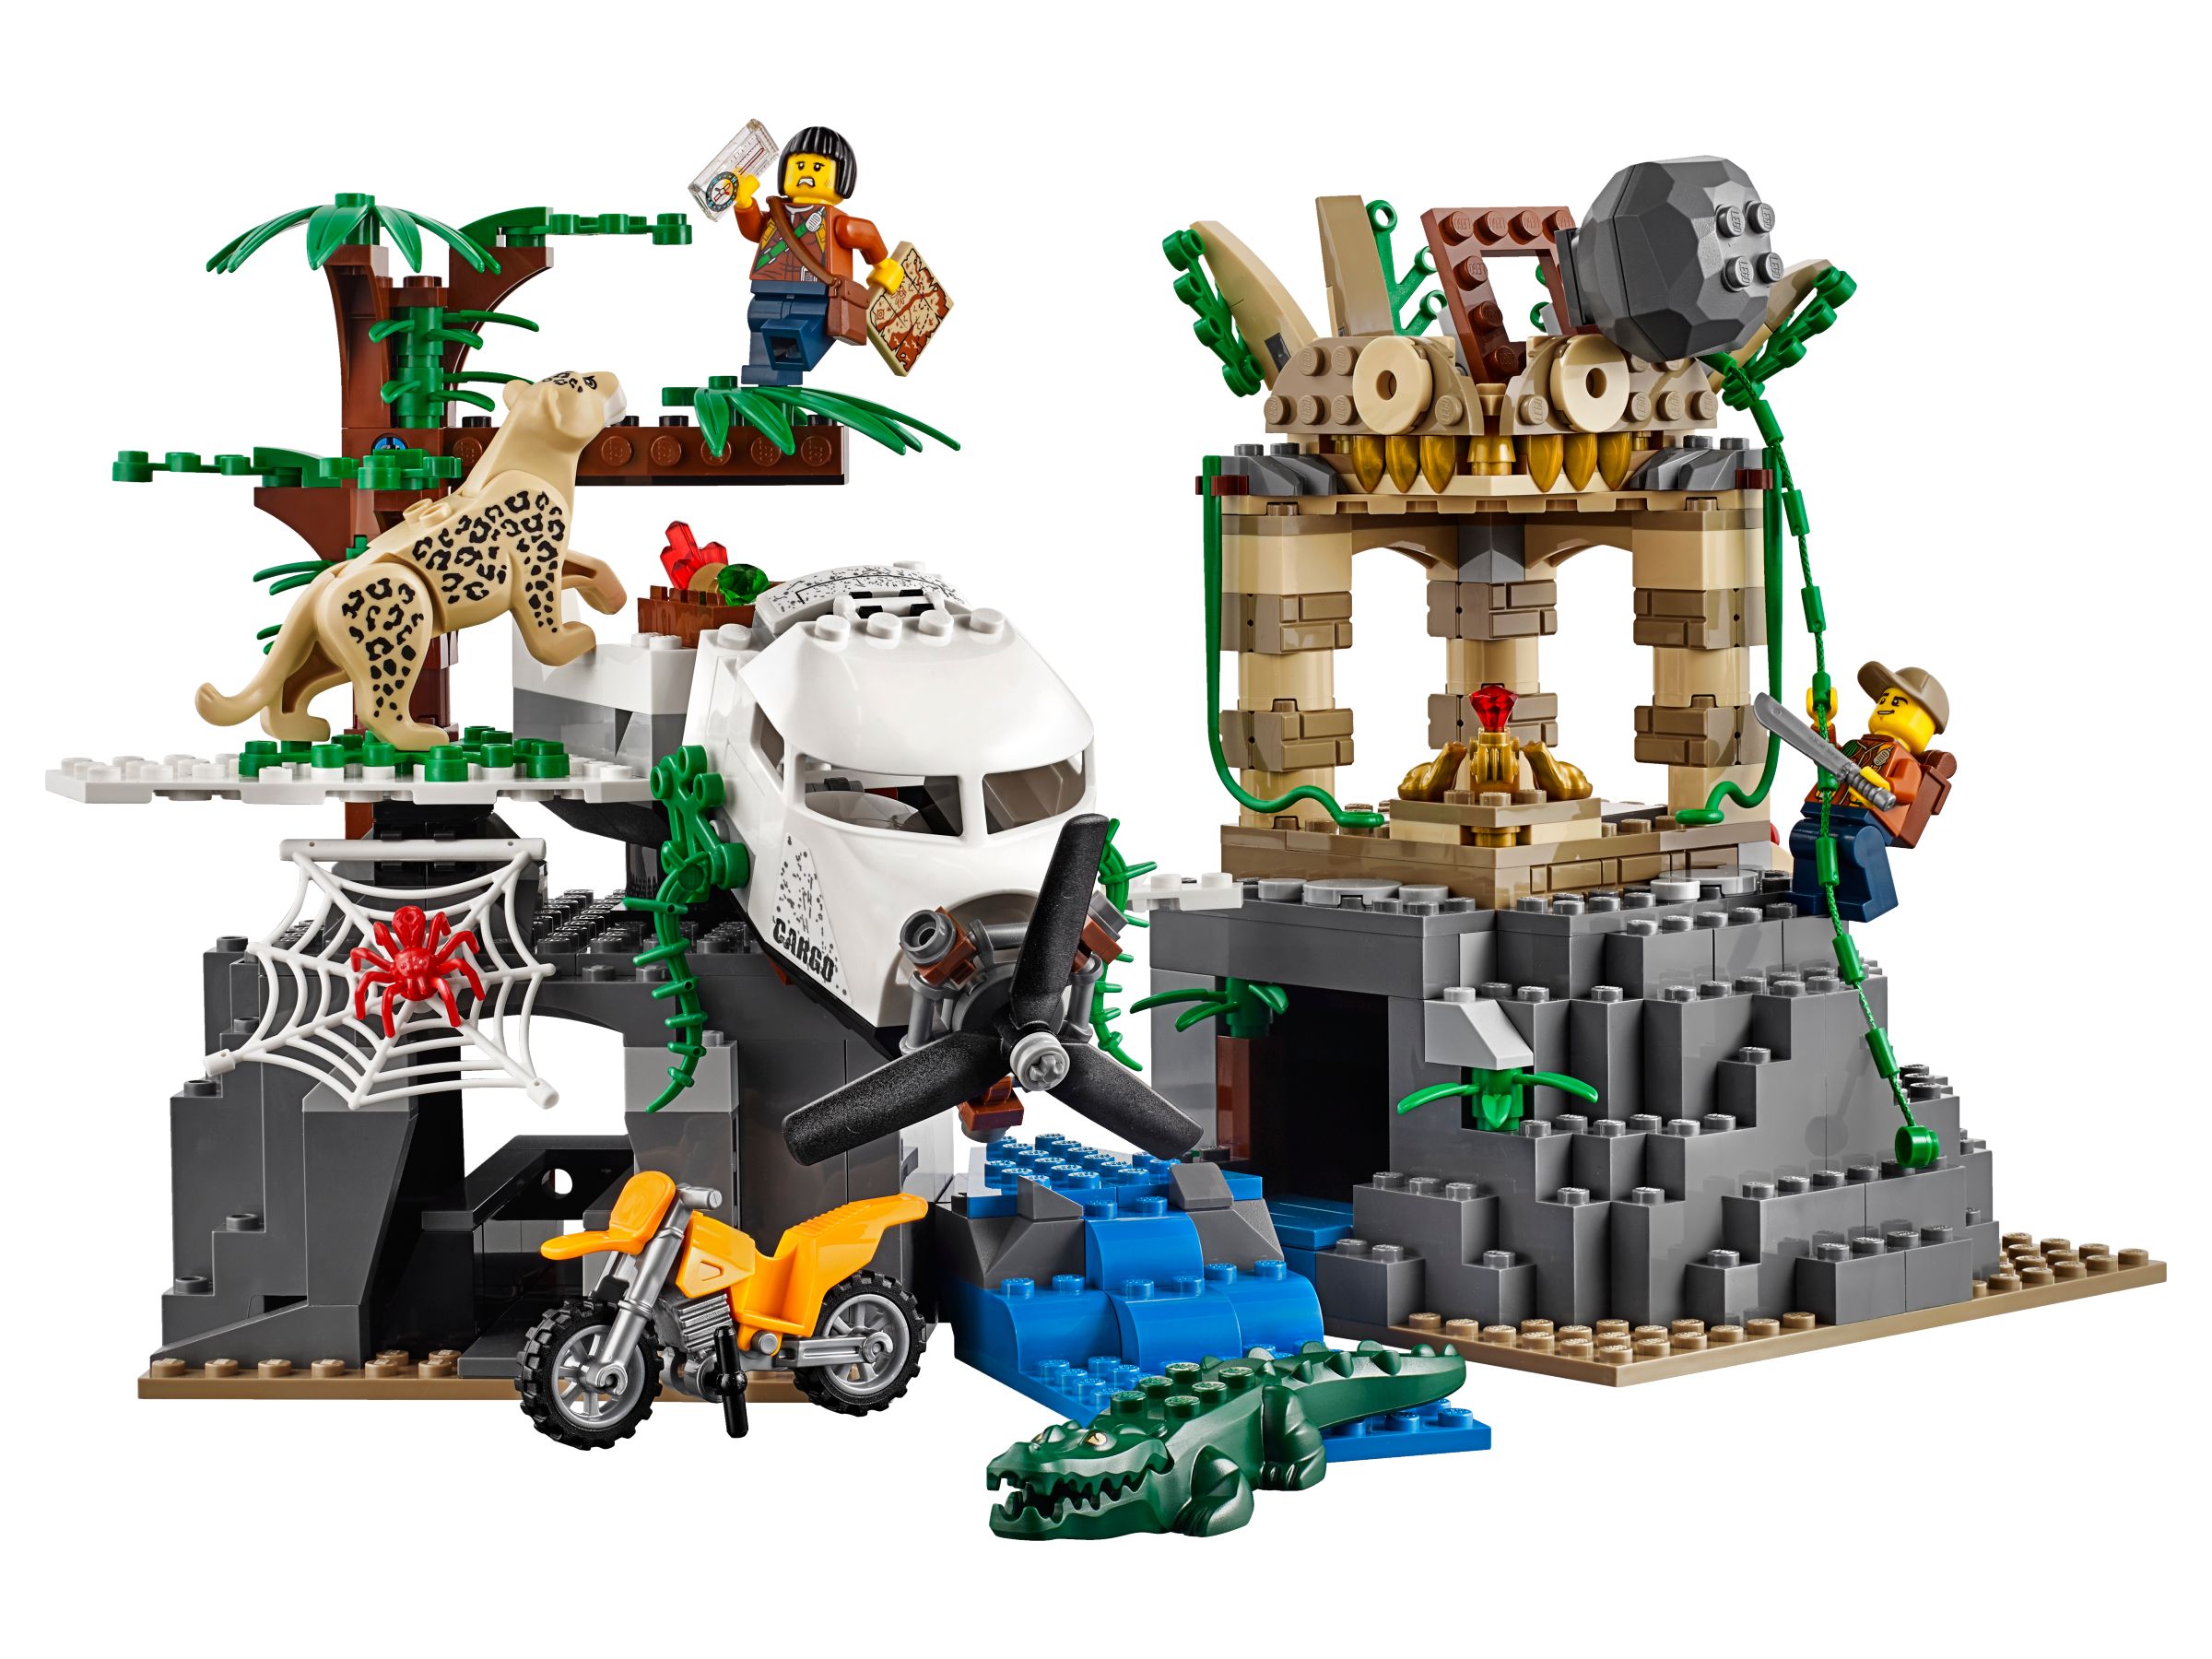 LEGO City 60161 Dschungel-Forschungsstation LEGO_60161_alt2.jpg